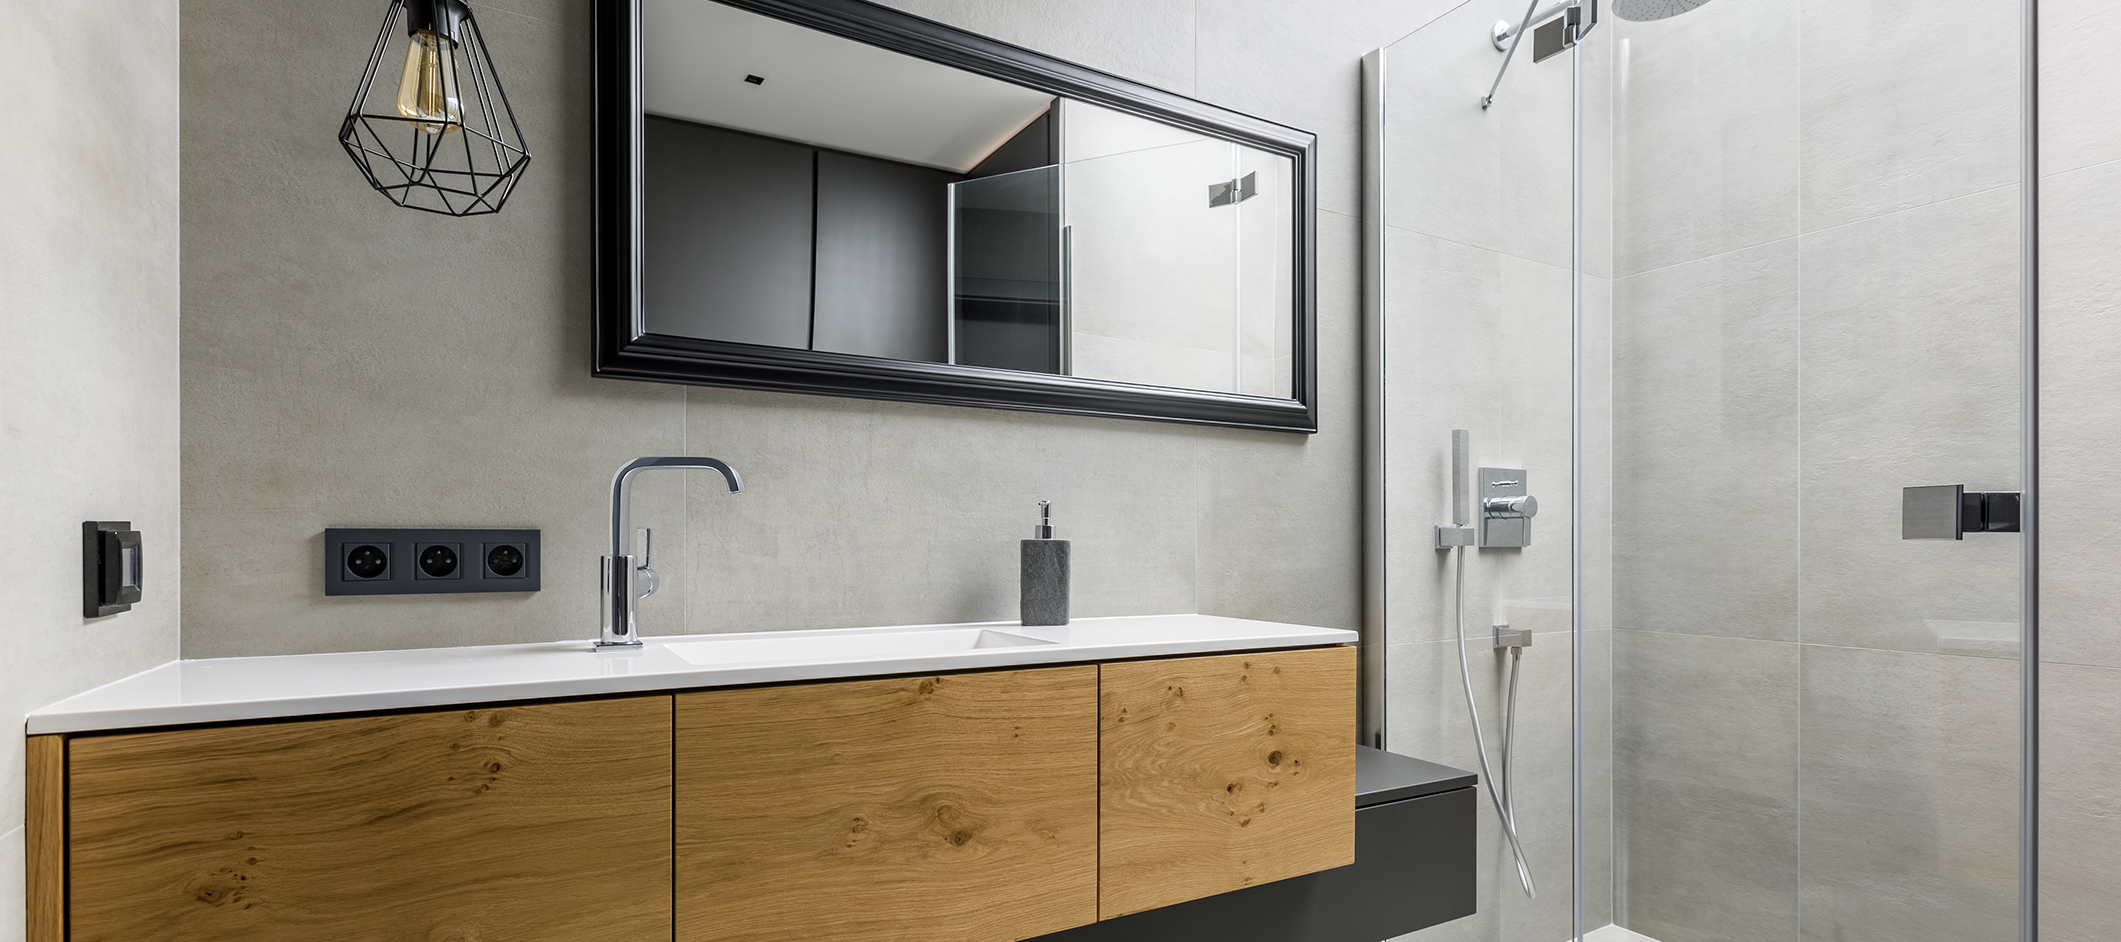 Plomberie : les nouvelles tendances décoration pour la salle de bain